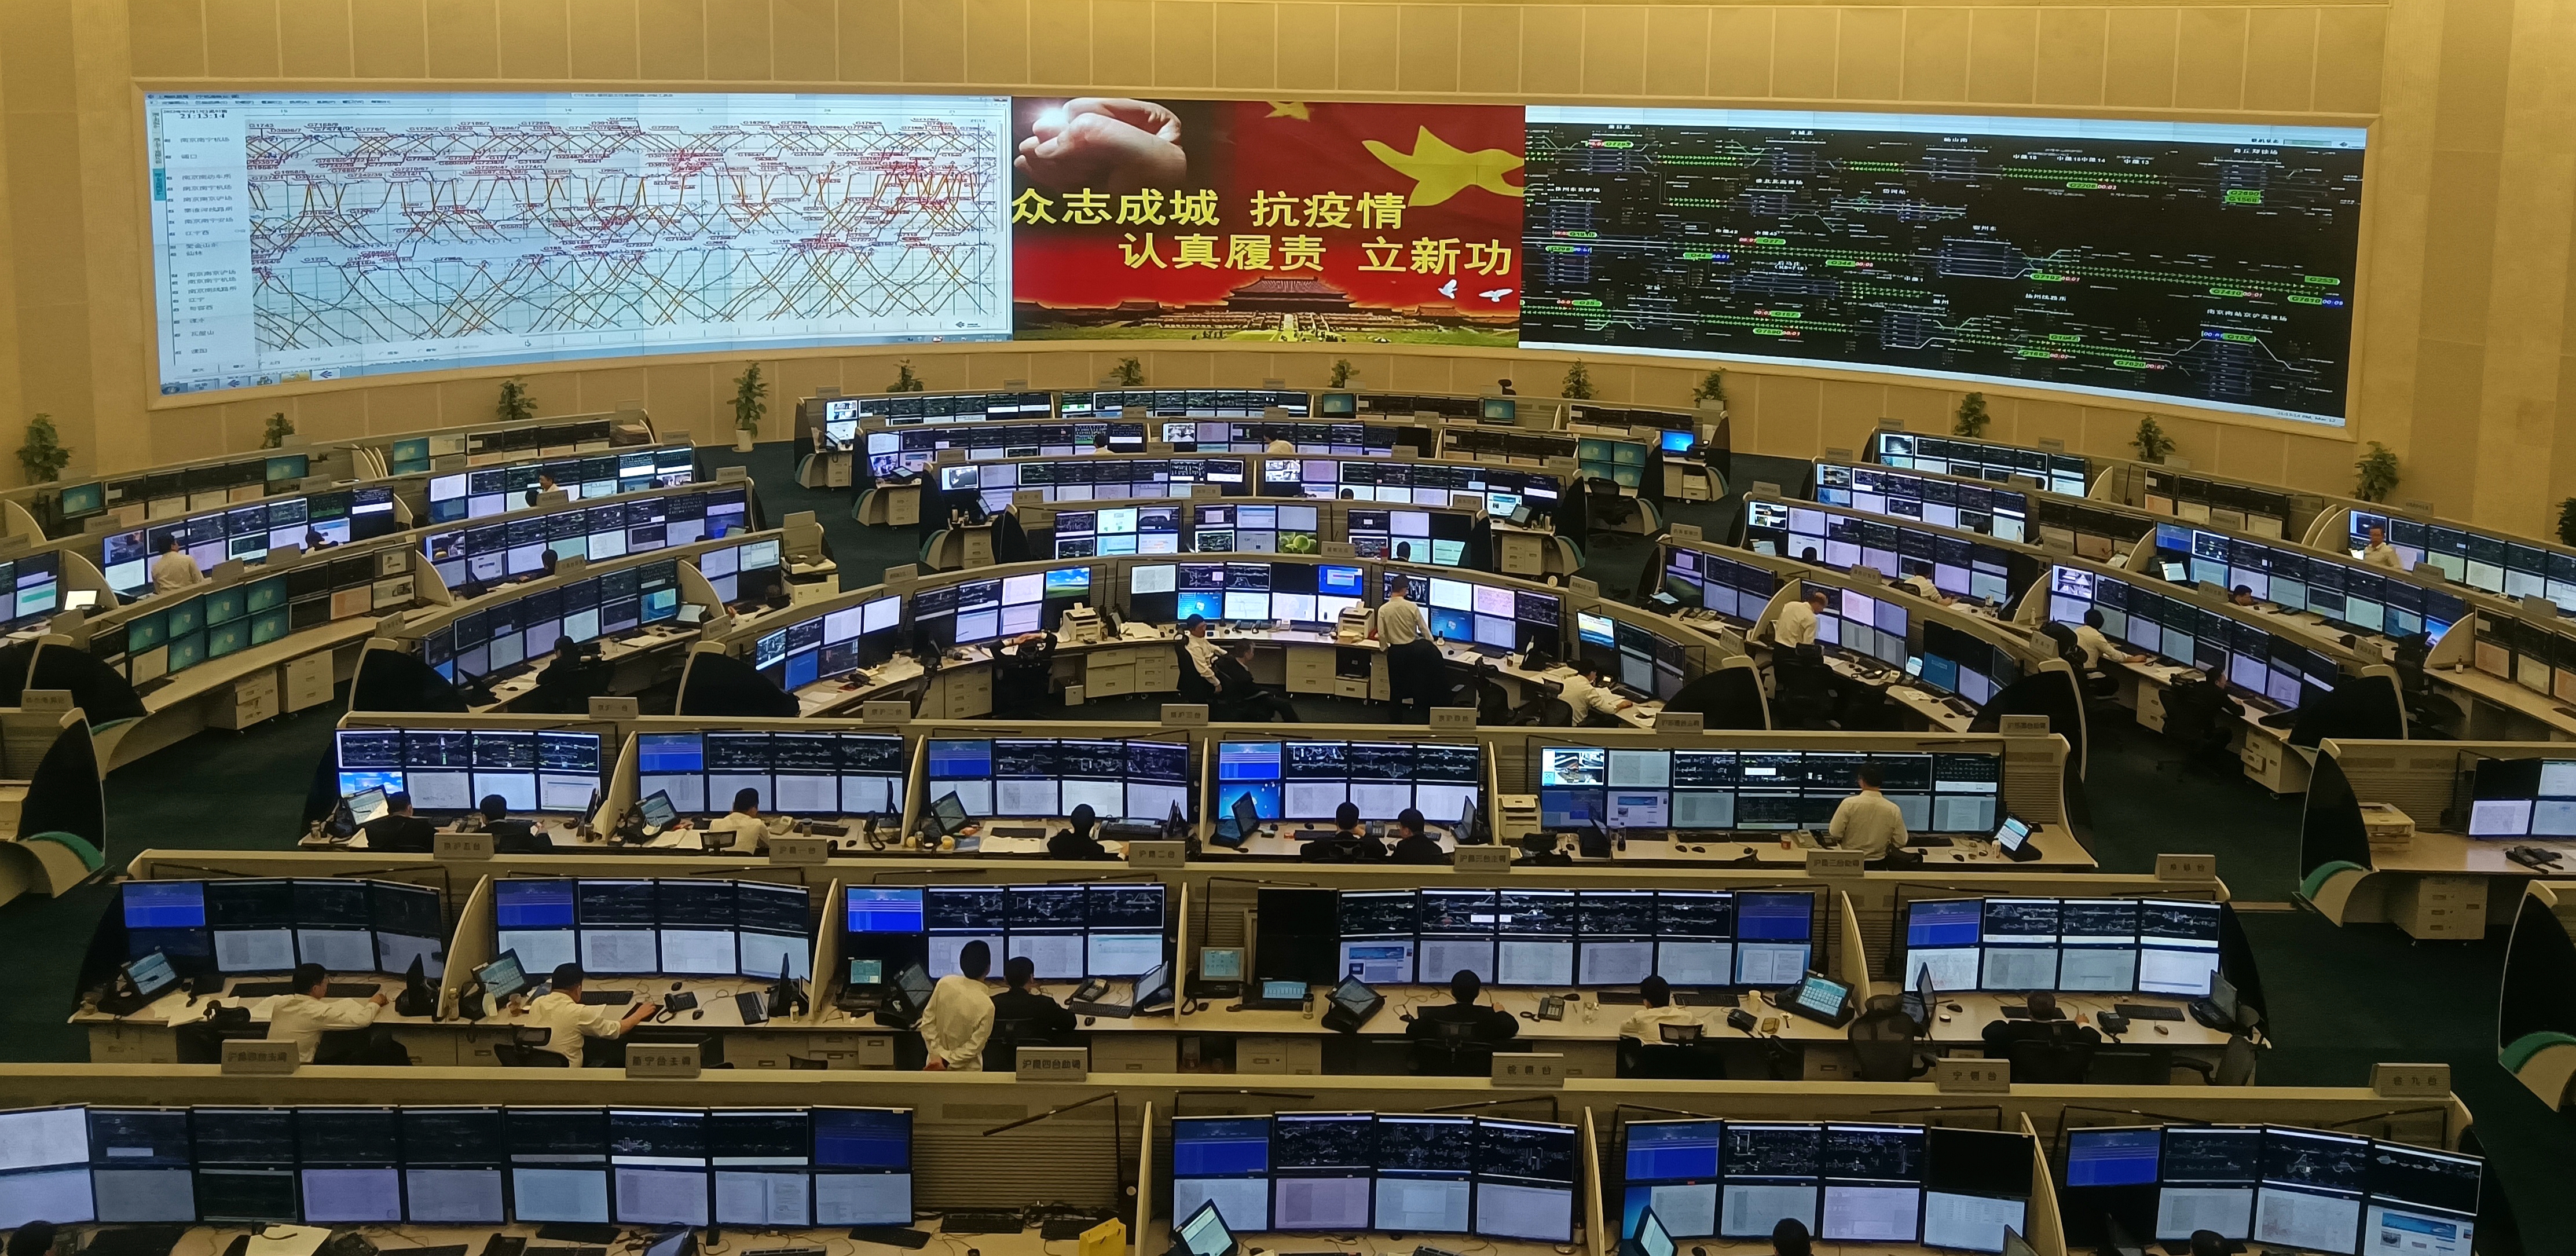 中国铁路上海局集团有限公司调度指挥中心。  许文峰 摄